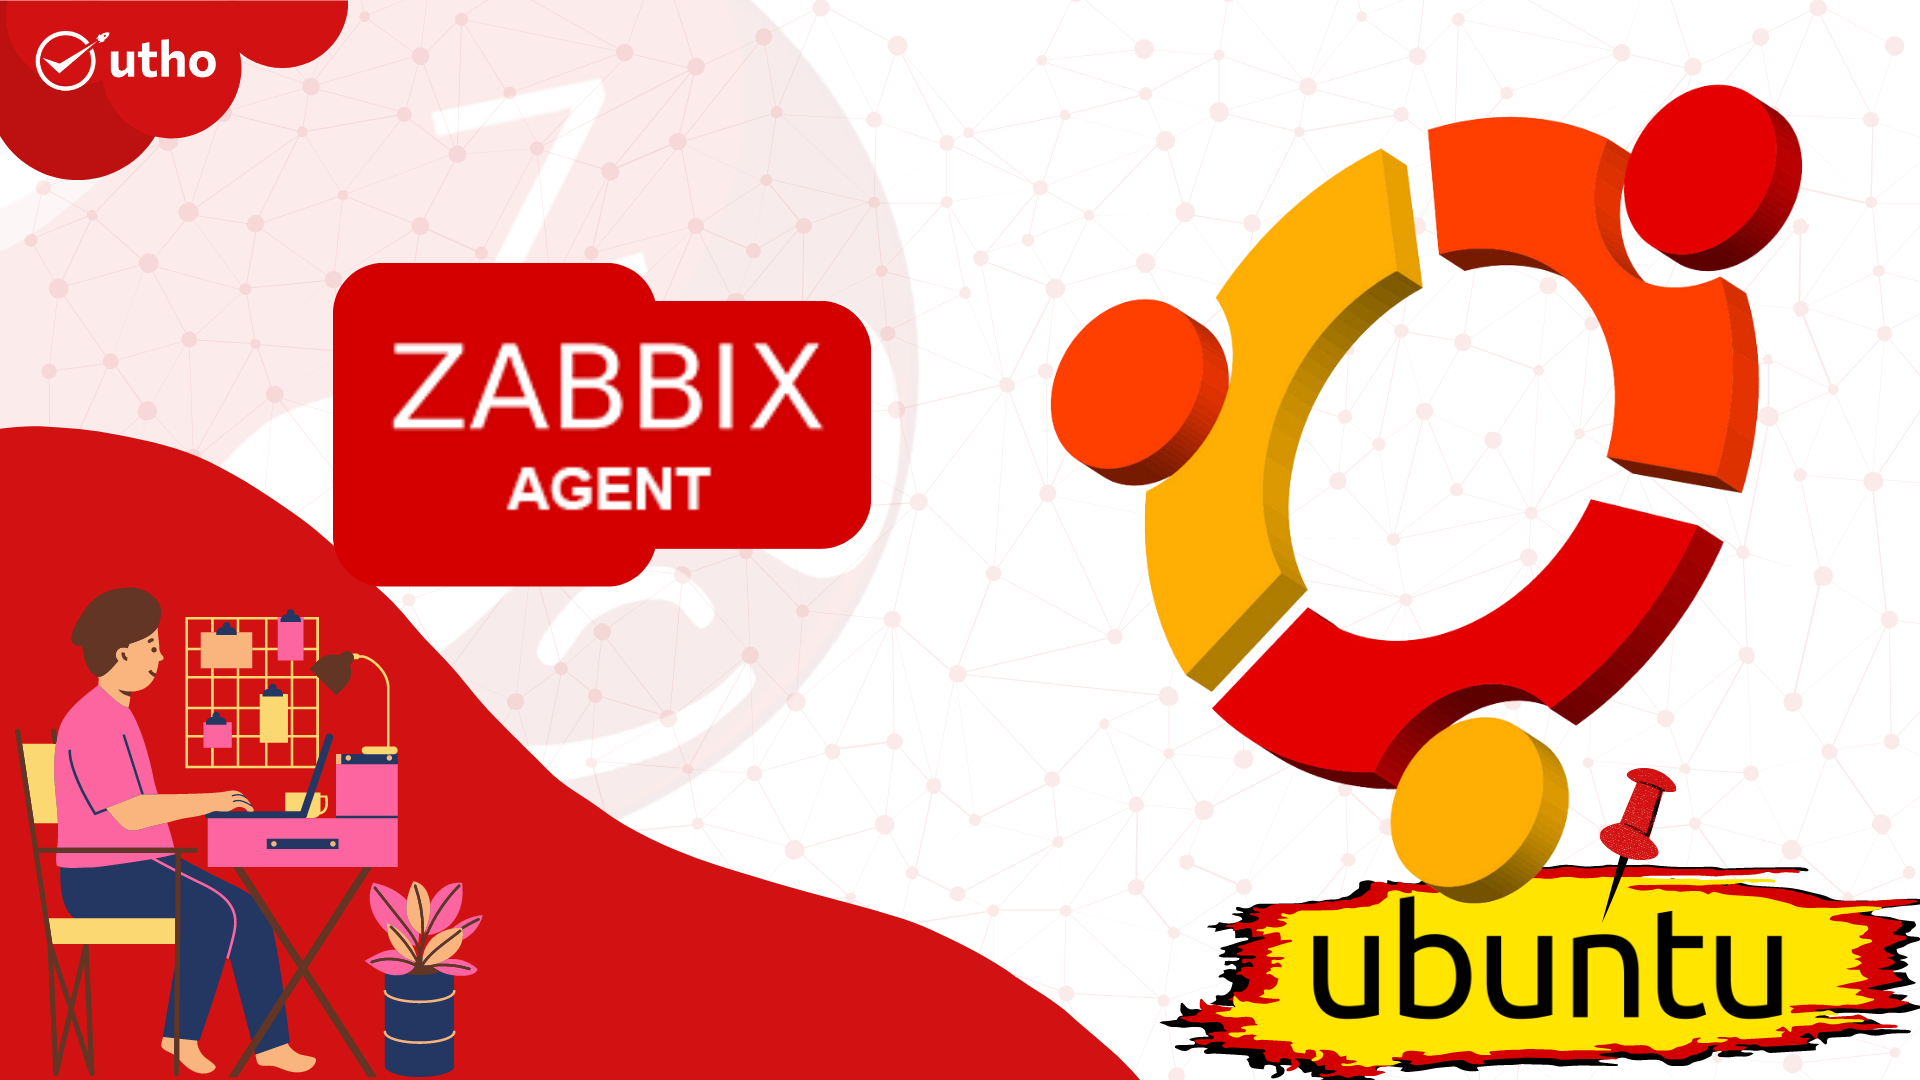 How to install Zabbix agent on Ubuntu